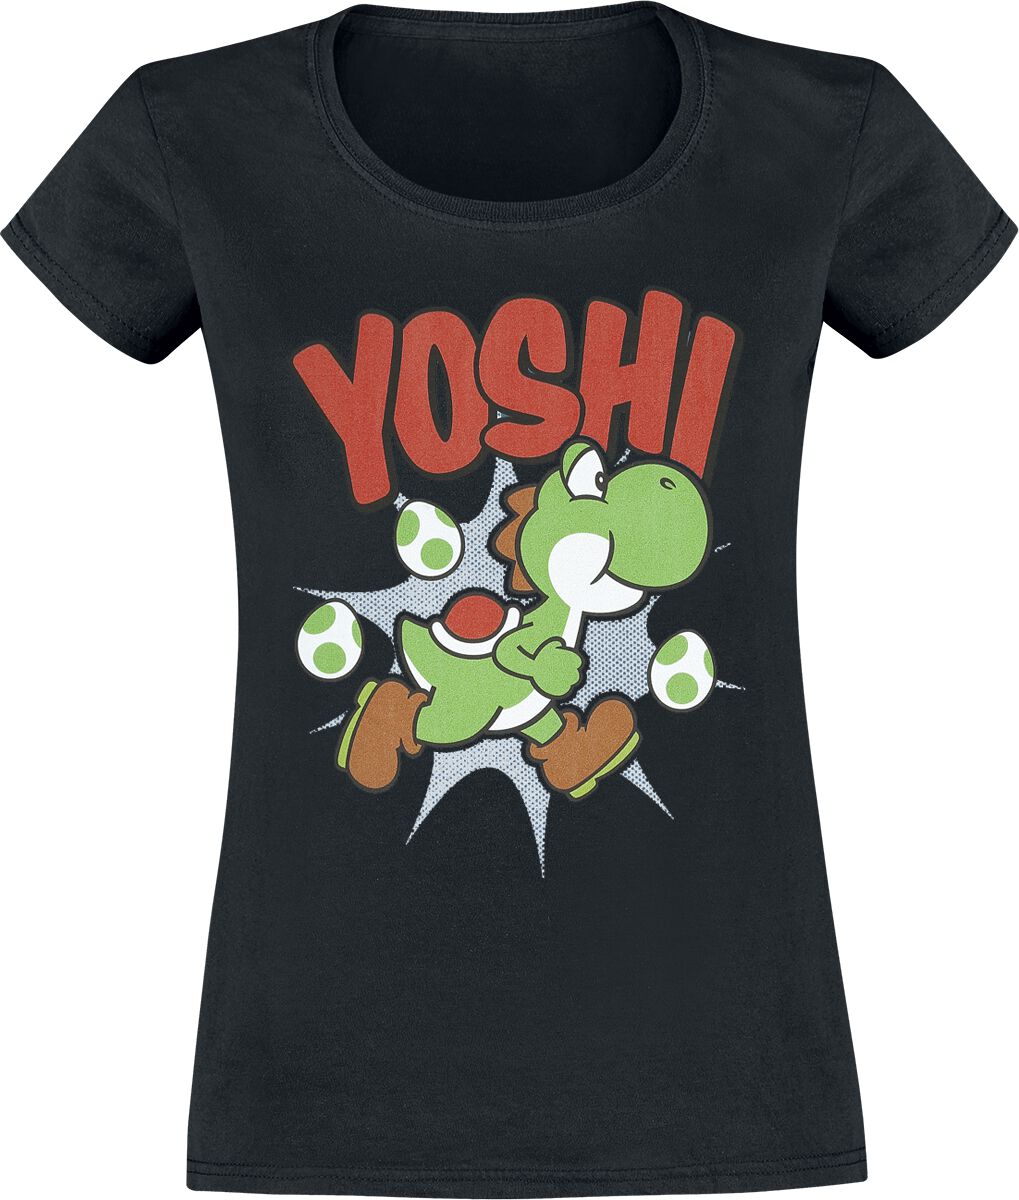 T-Shirt Manches courtes Gaming de Super Mario - Yoshi - S à XXL - pour Femme - noir